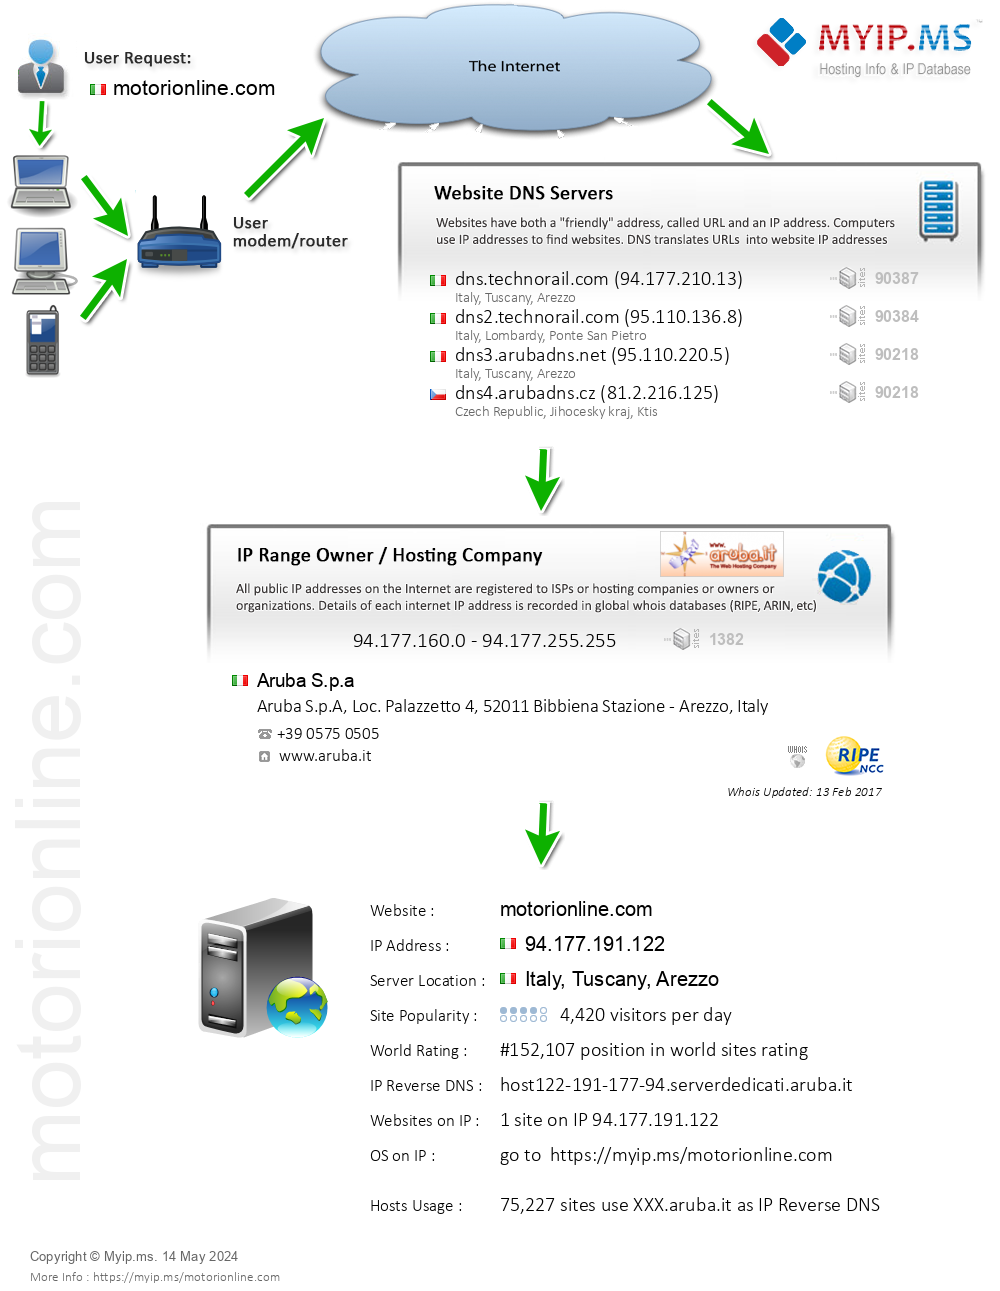 Motorionline.com - Website Hosting Visual IP Diagram